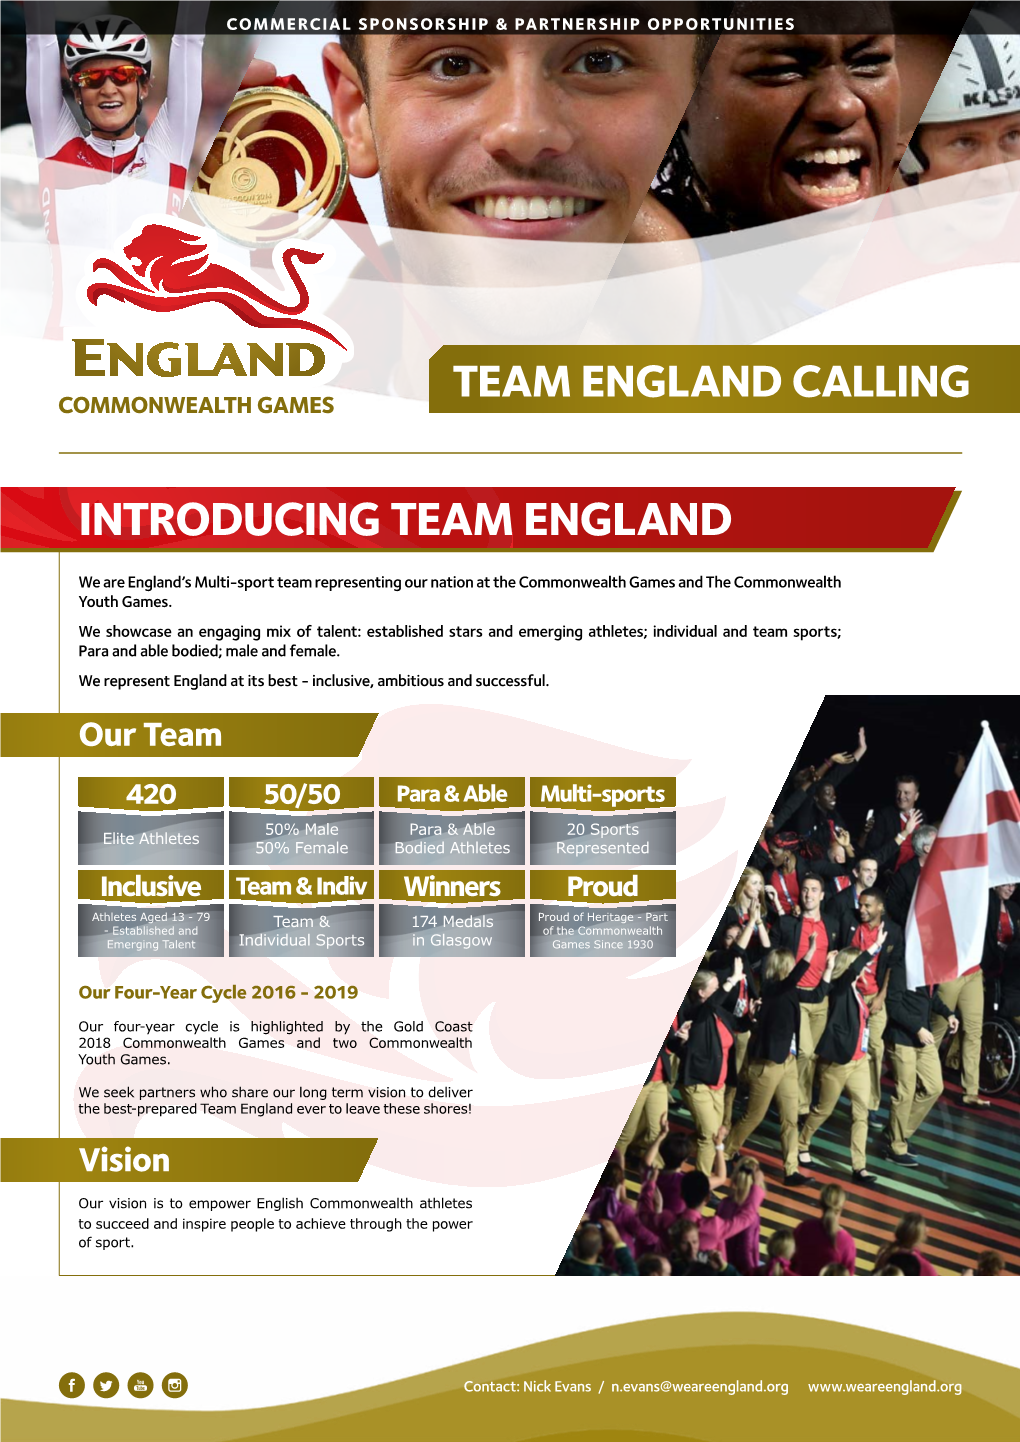 Team England Calling